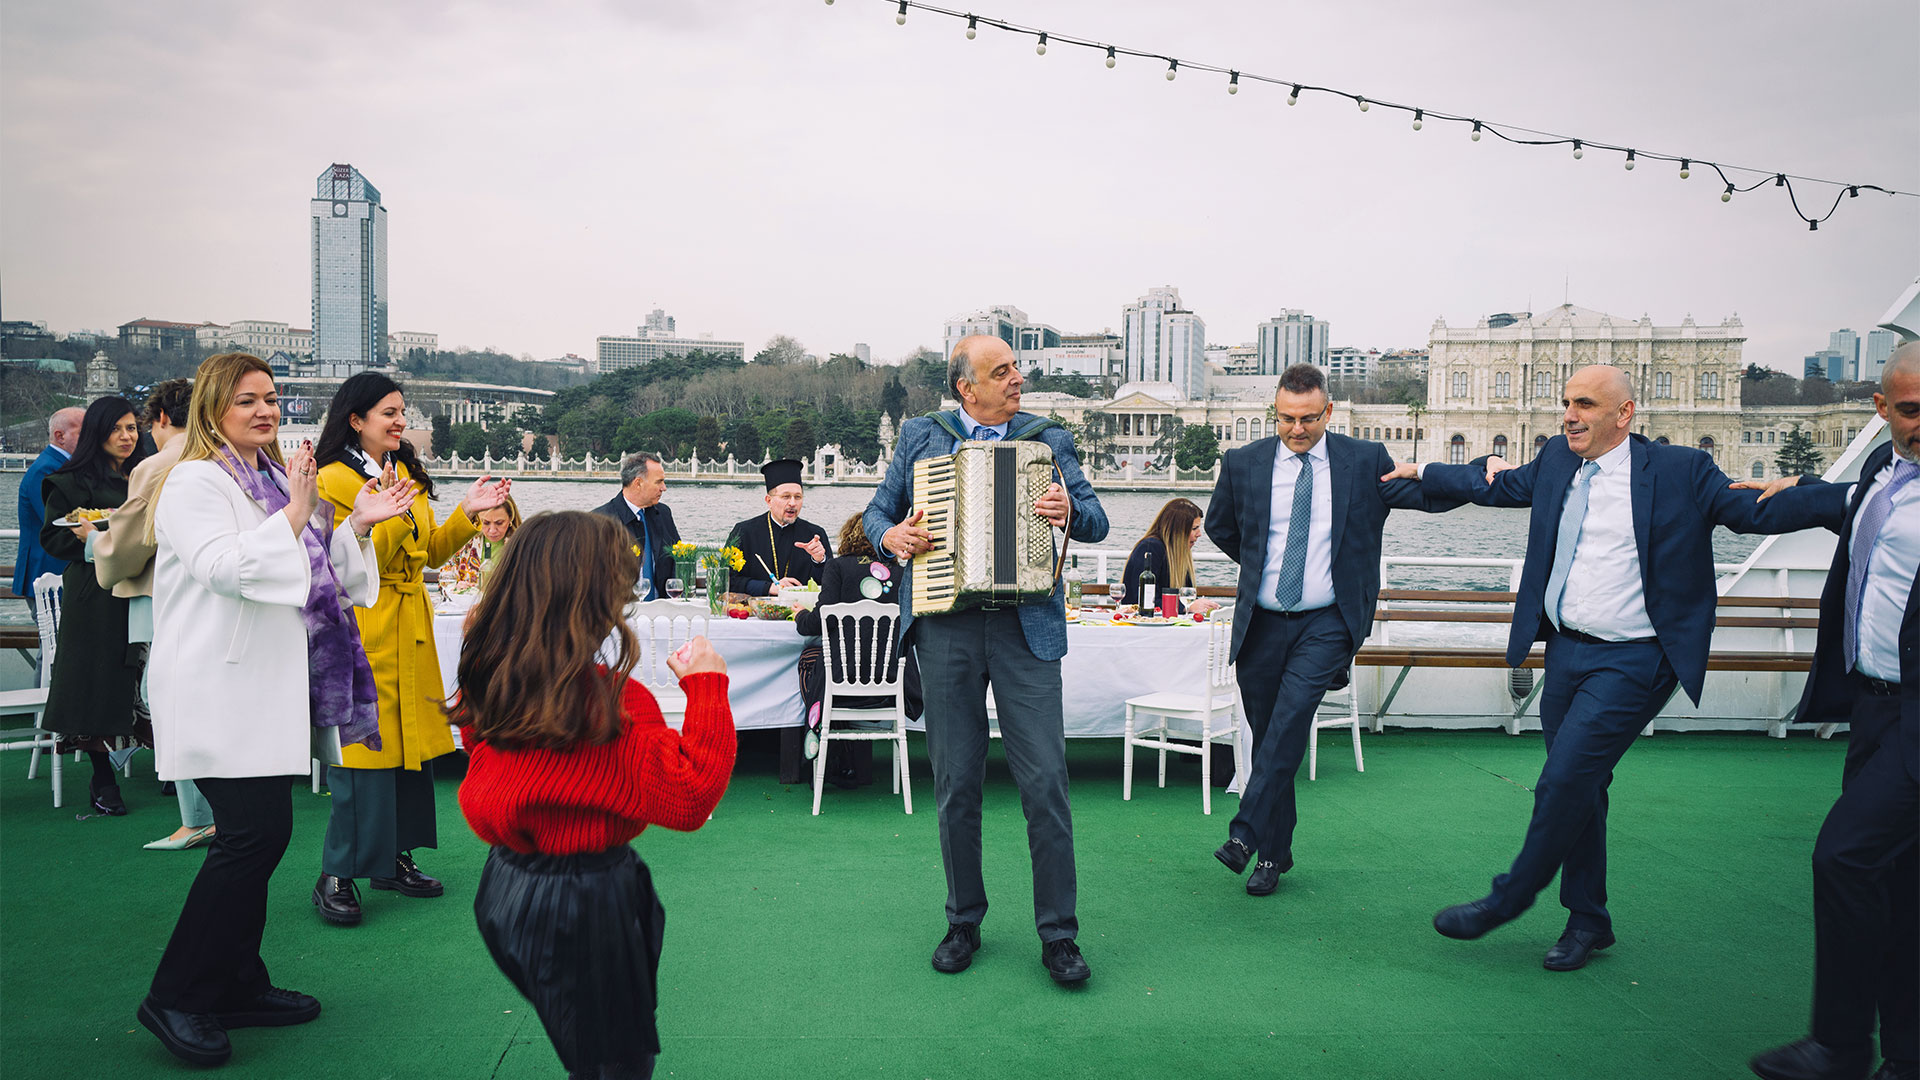 πάσχα στην κωνσταντινούπολη: λαμπριάτικο τραπέζι στον βόσπορο